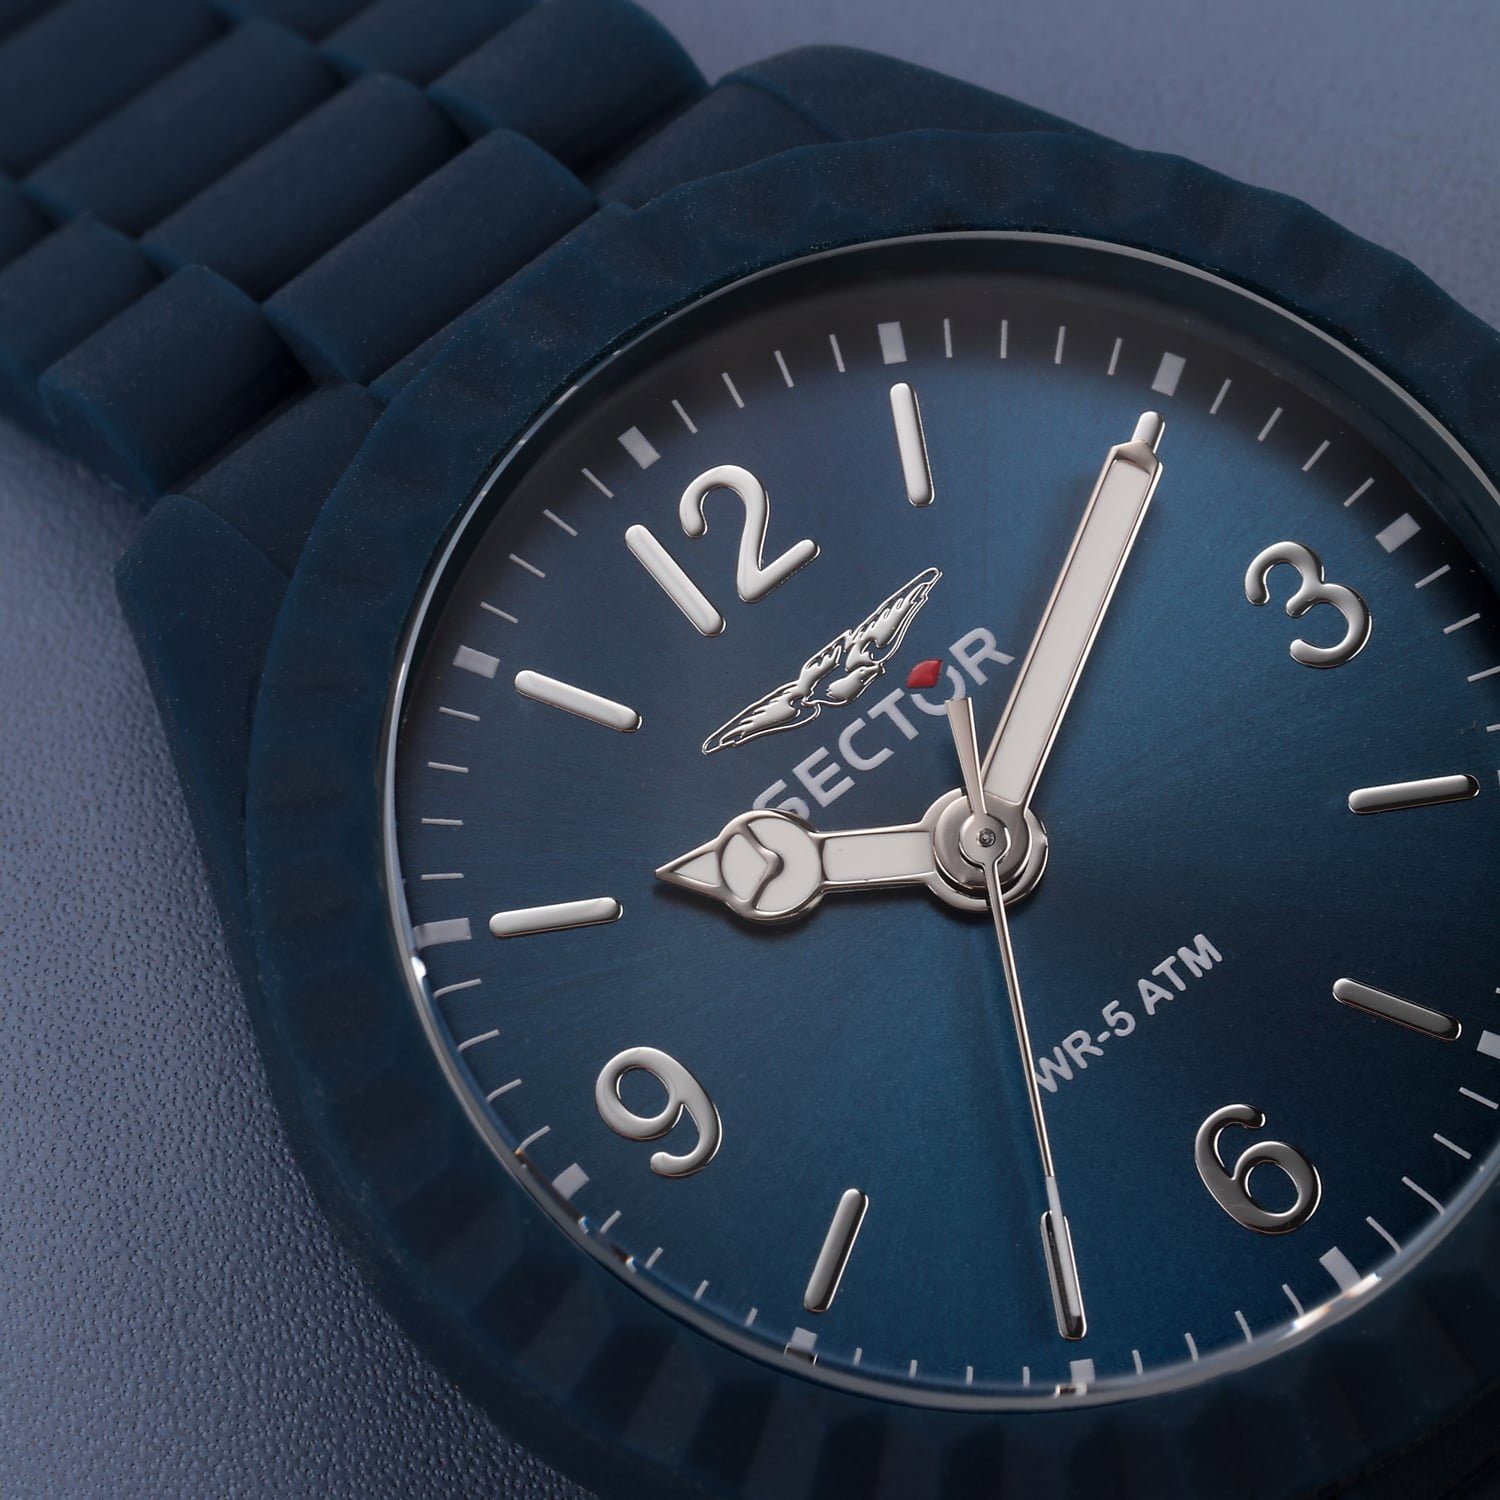 Sector Quarzuhr Sector Herren Armbanduhr blau, Fashion Analog, rund, groß Herren 44mm), Silikonarmband Armbanduhr (ca